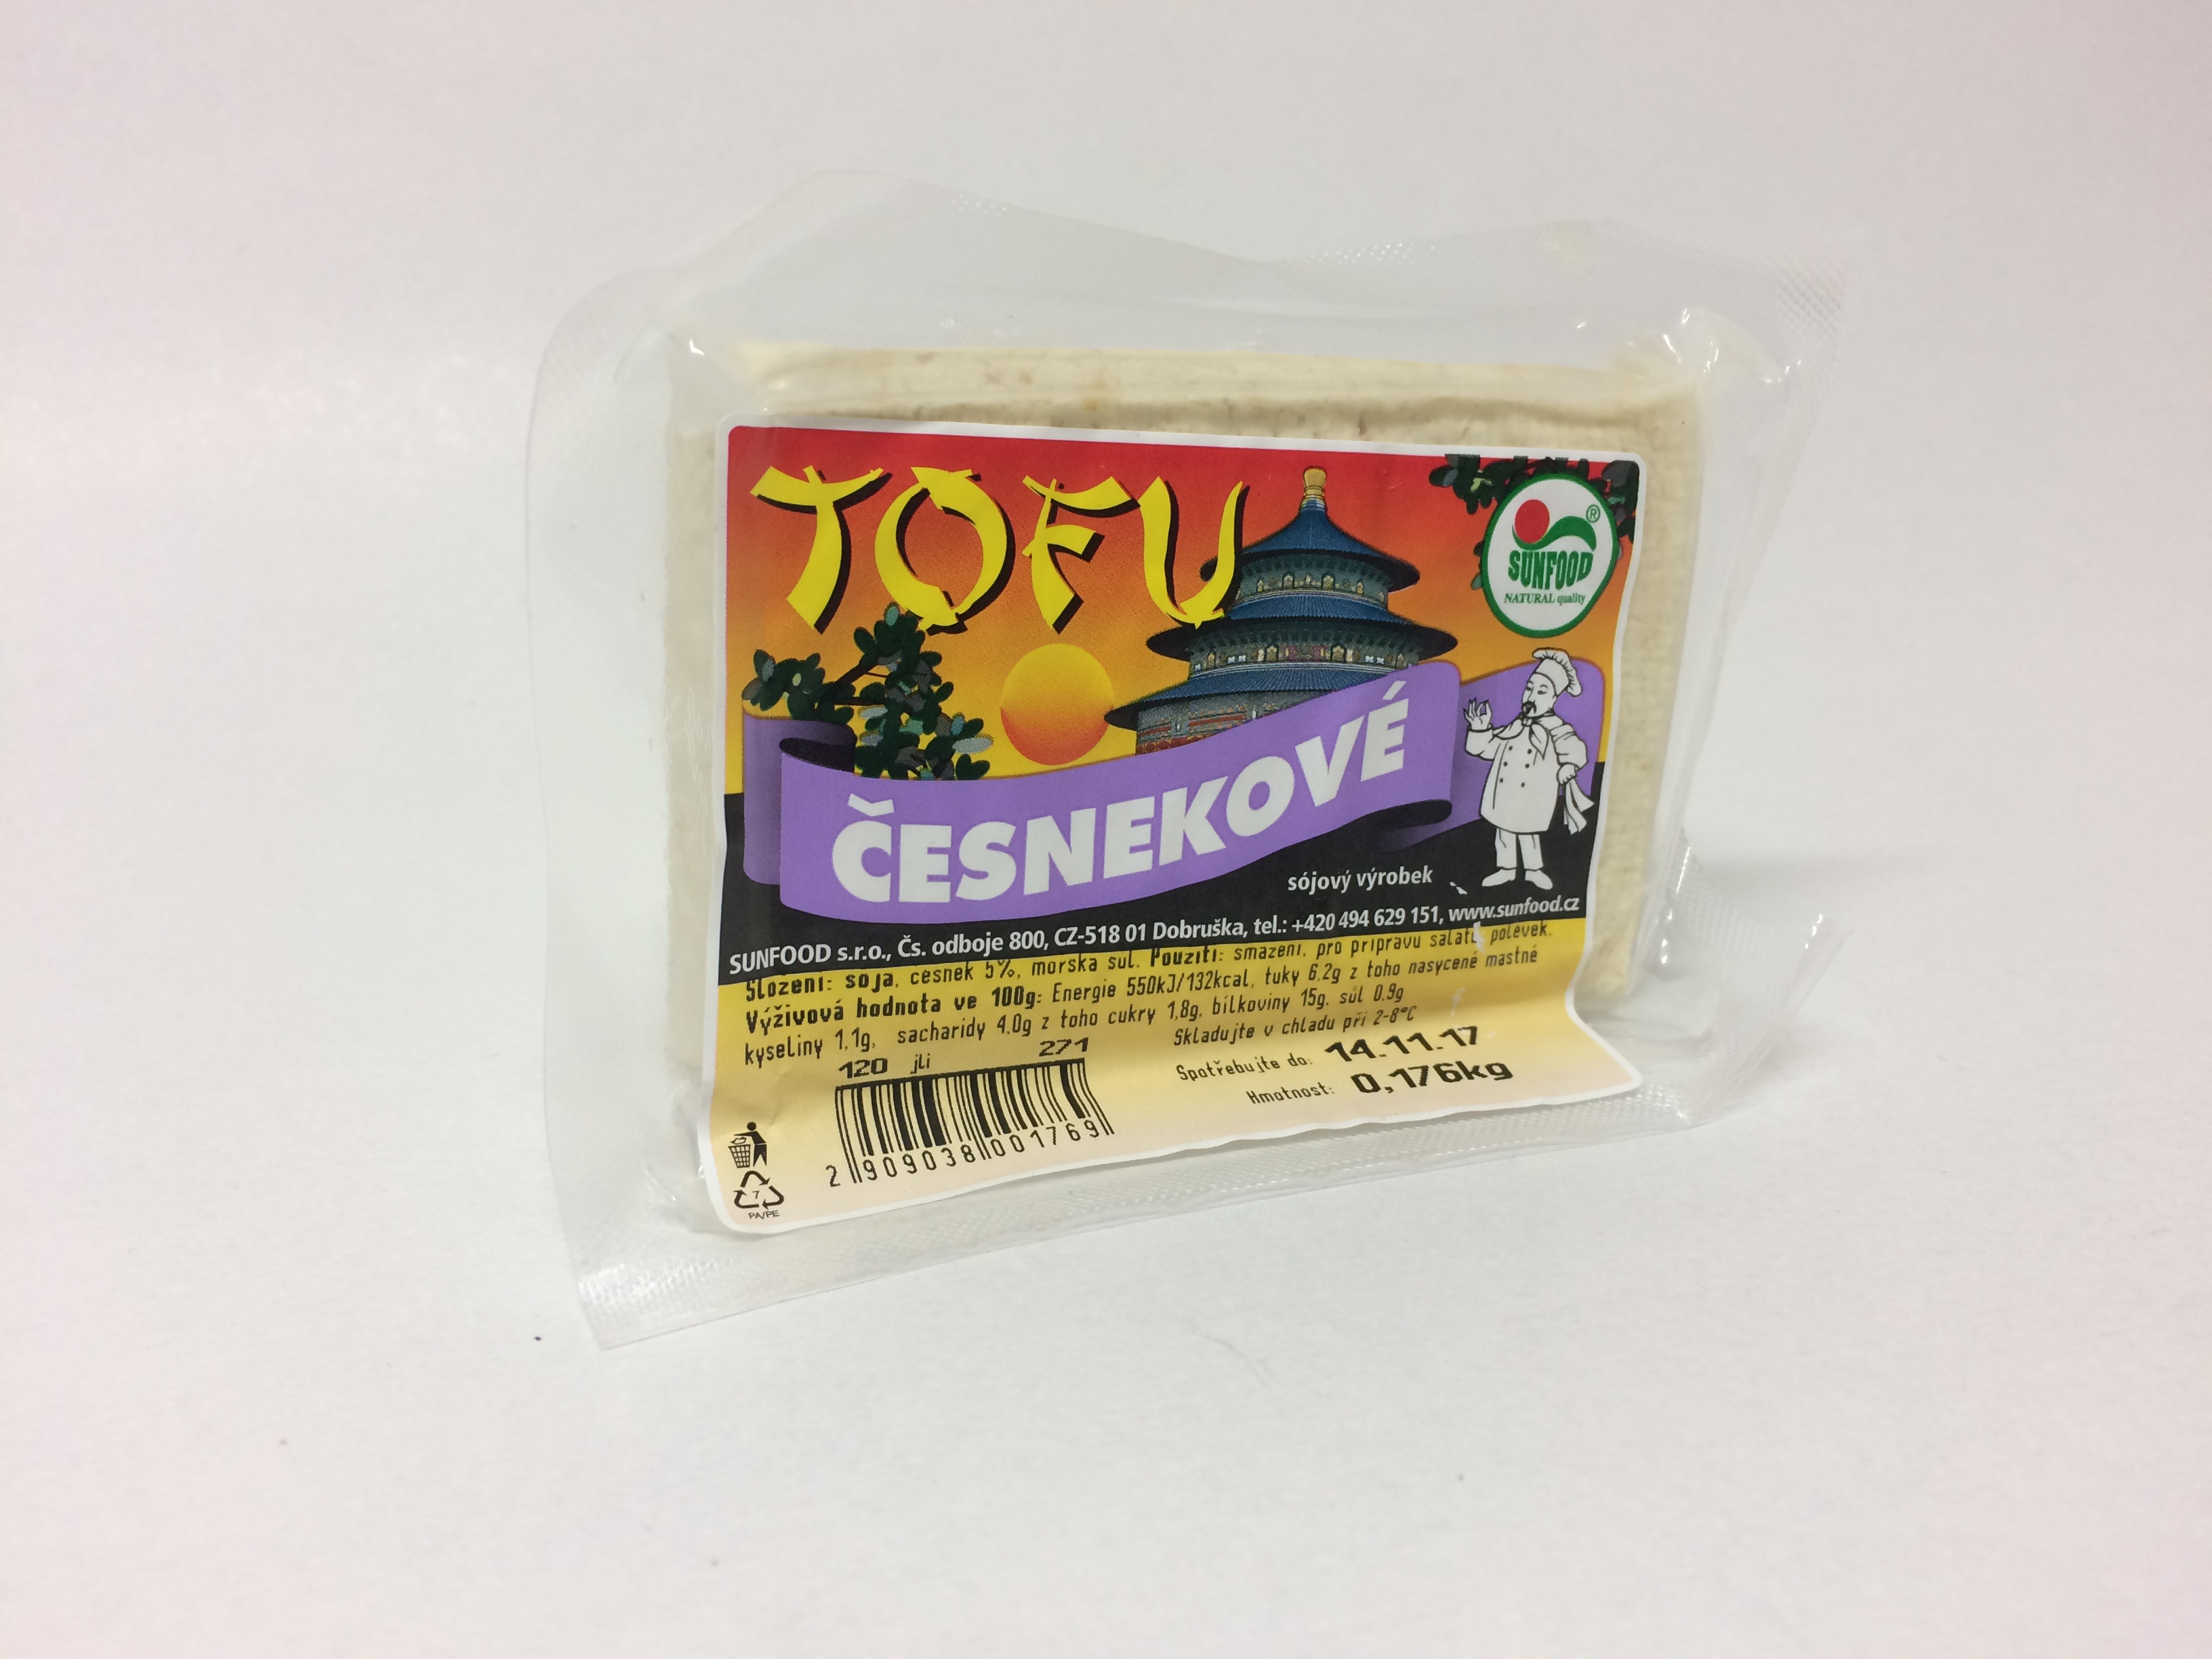 Tofu česnekové váha 